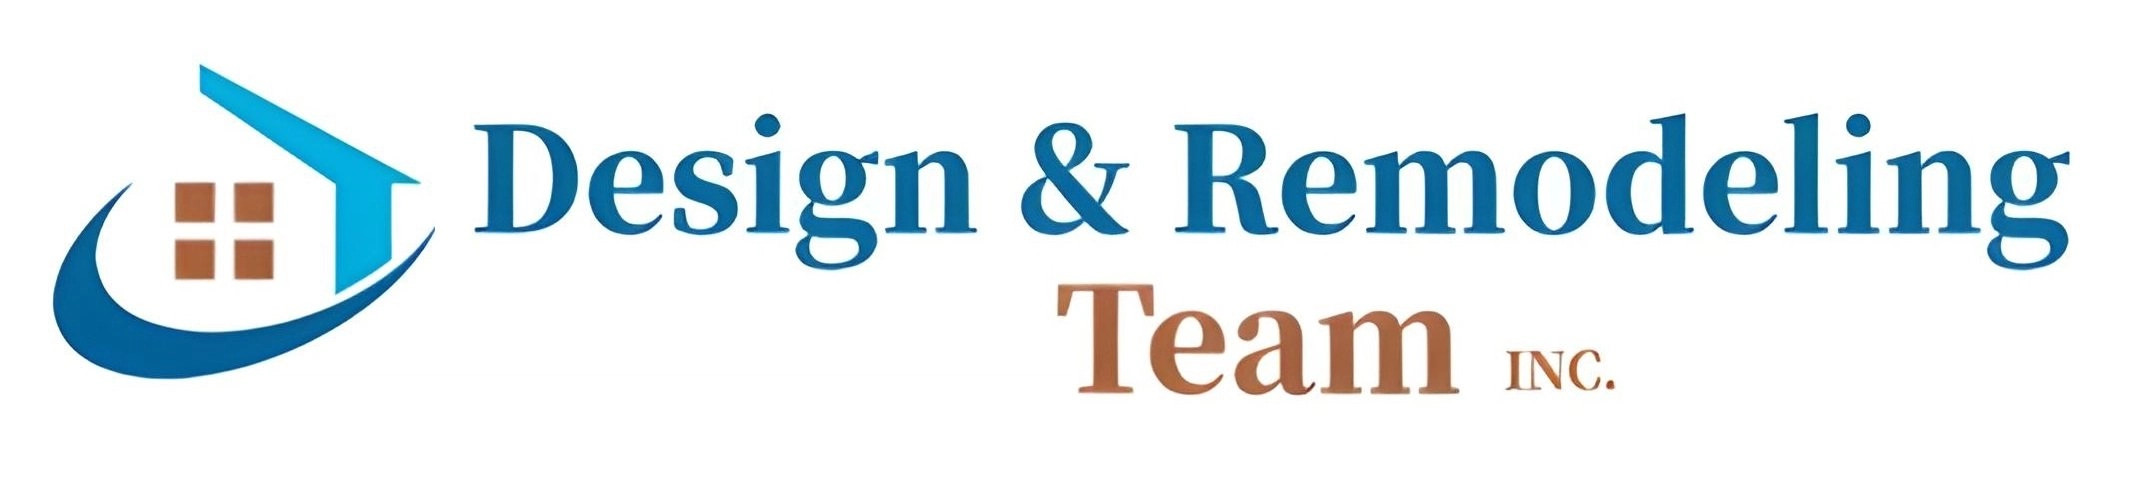 Design & Remodeling Team Inc Logo